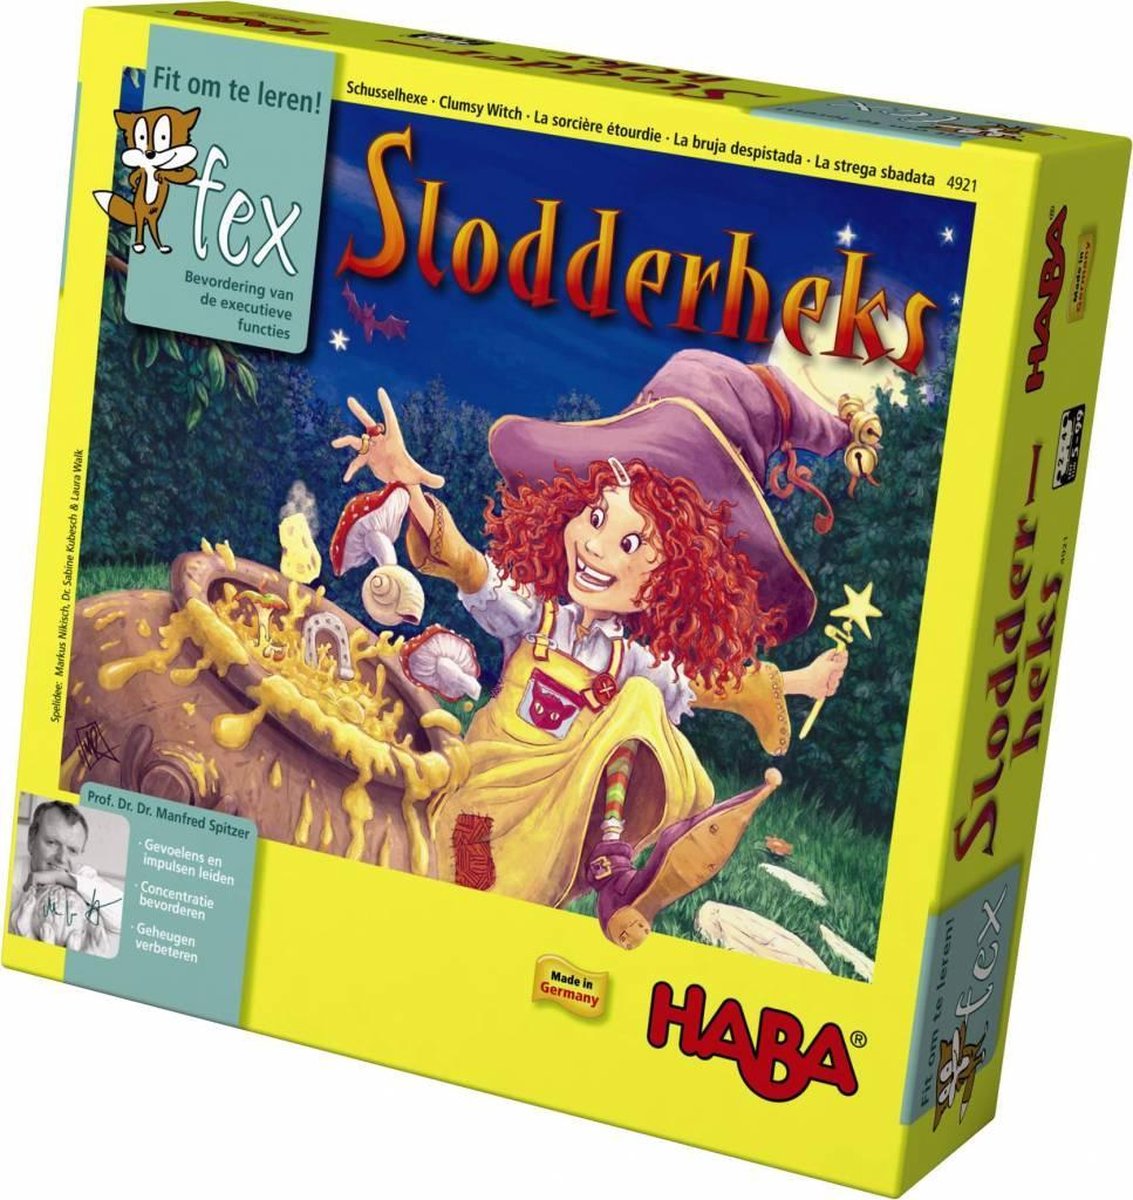 Haba Spel - Fex - Slodderheks (Nederlands) - Haba